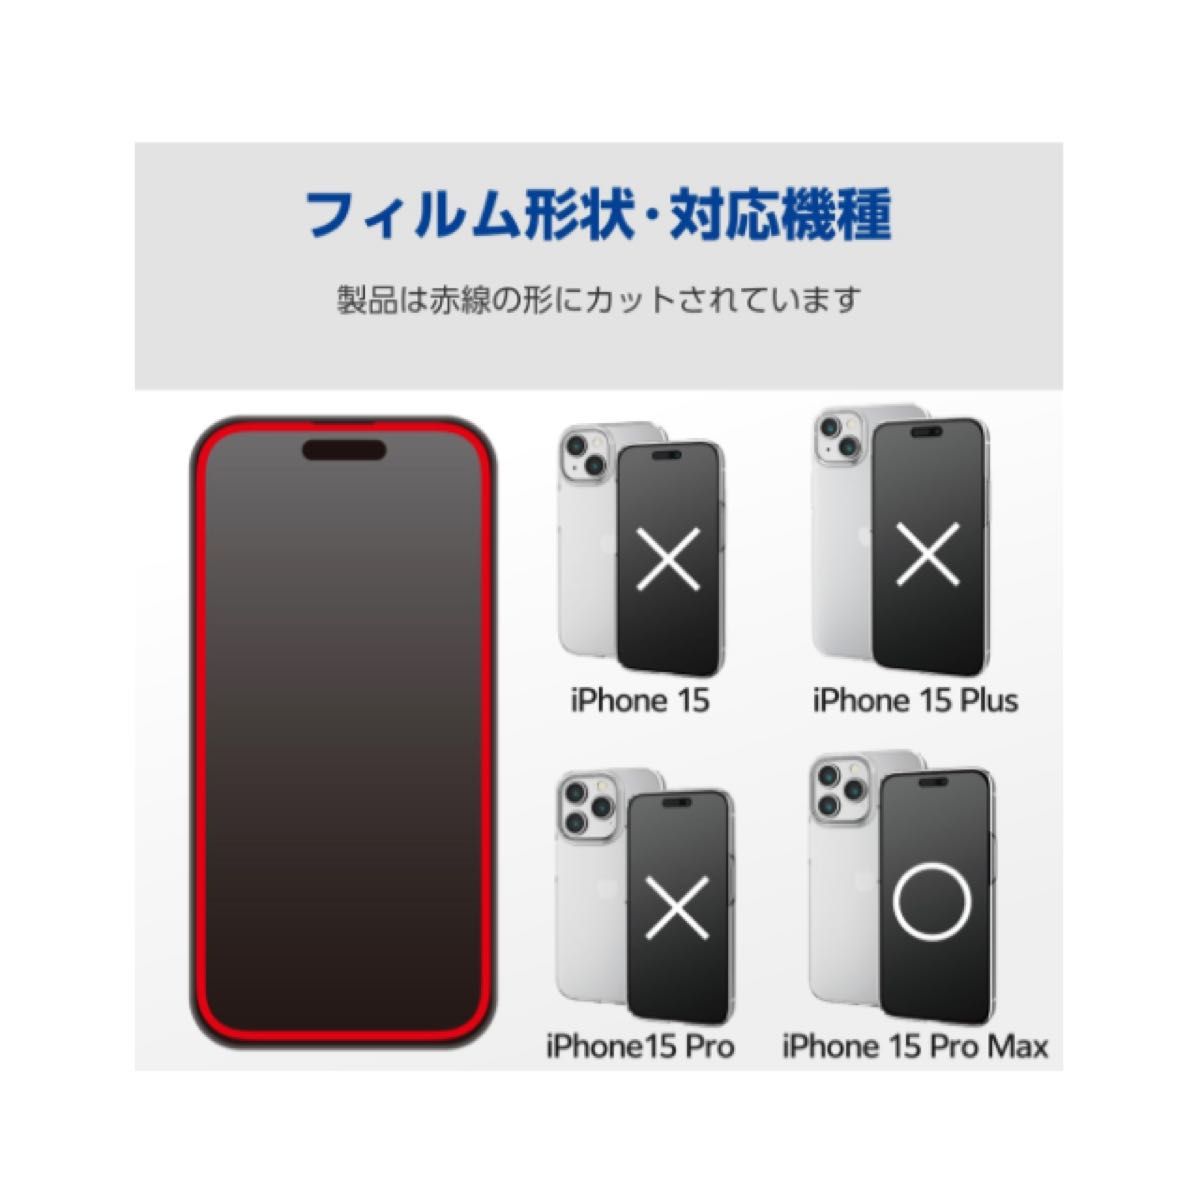 エレコム iPhone15 Pro Max ガラスフィルム 全面 99%画面保護 ブルーライトカット付き 40% 硬度10H 